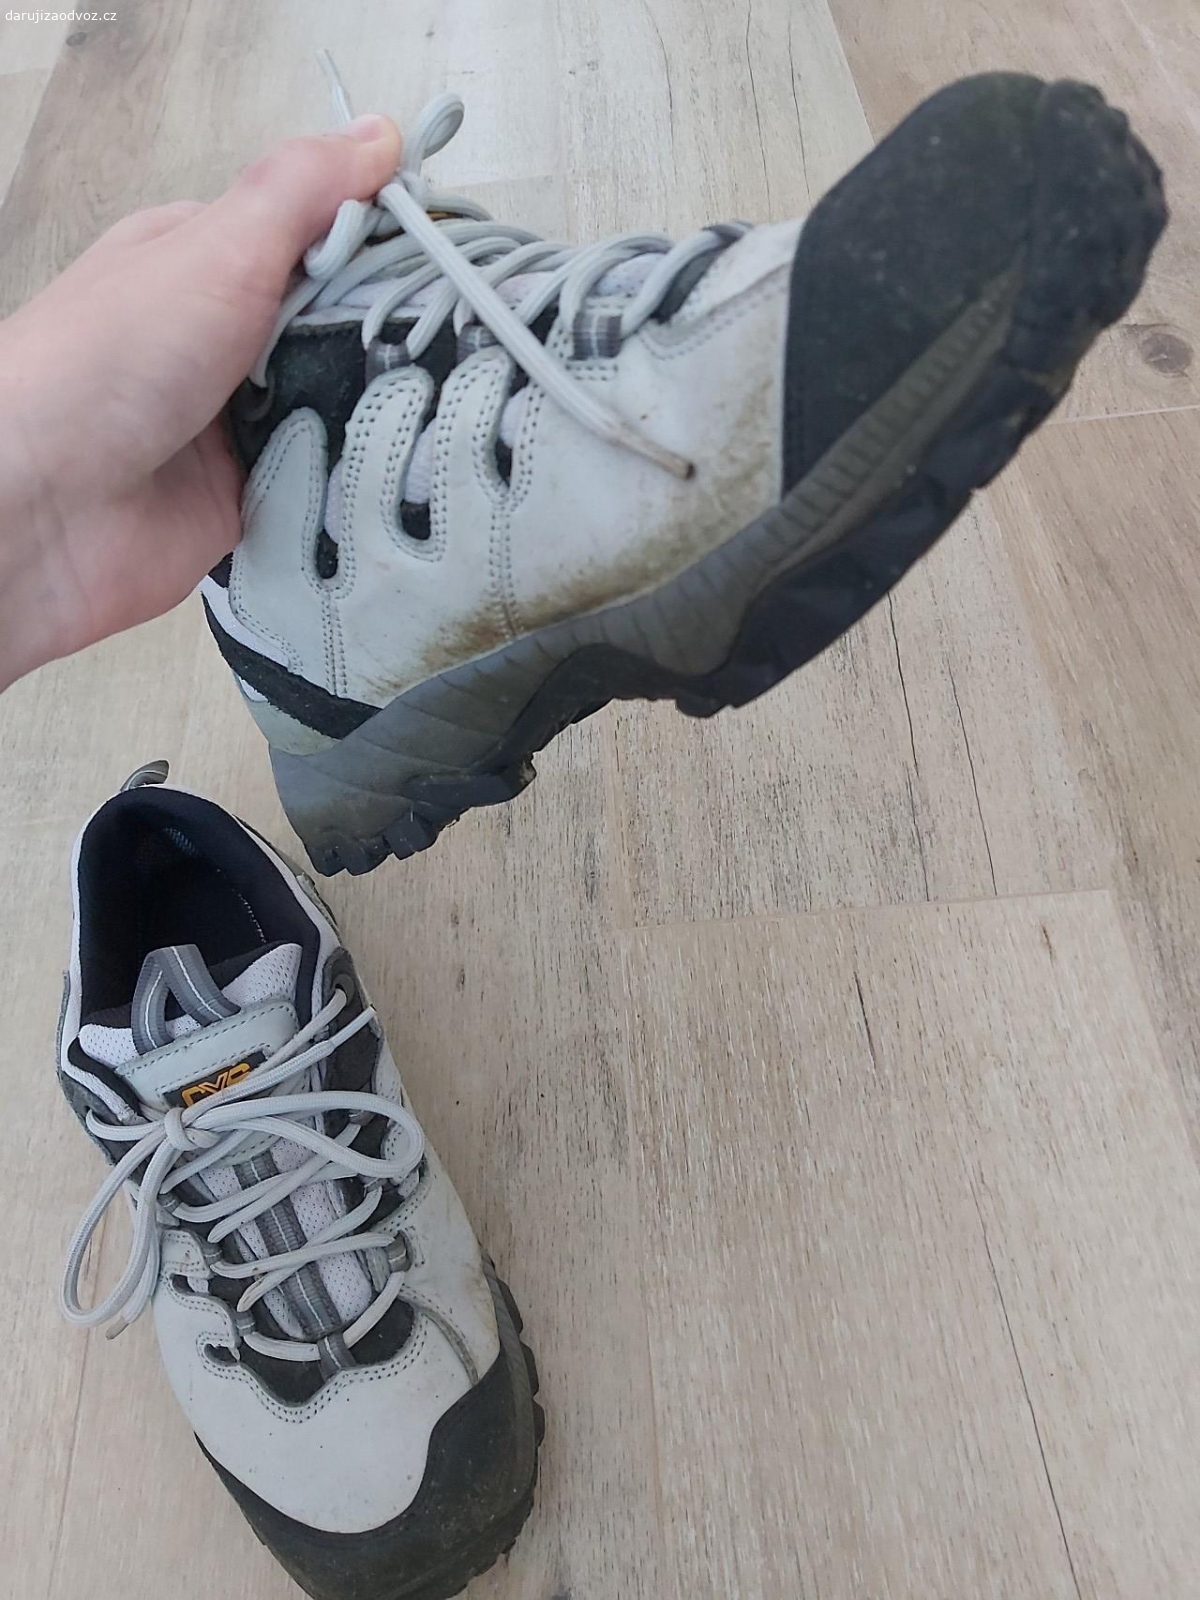 Dámské pracovní boty CXS vel. 41. Daruji dámské pracovní boty CXS, velikost 41. Používané na zahradě, ale stále v dobrém stavu. Idelání na zahradu, na stavbu. Nezasílám. Prosím o kontakt přes email nebo sms.